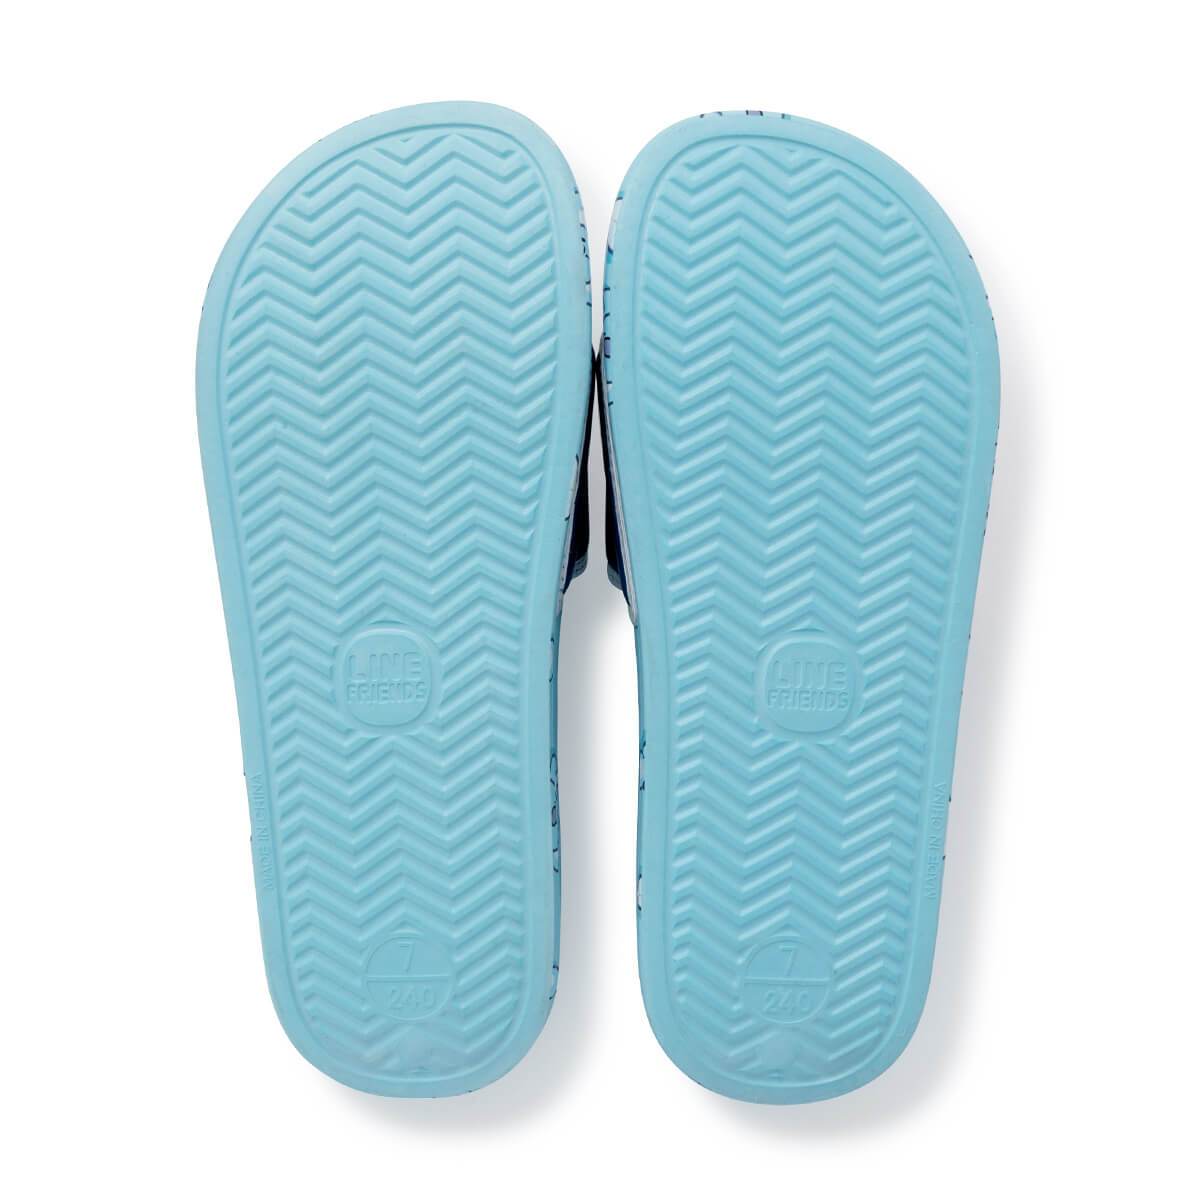 BT21 KOYA Velcro slippers